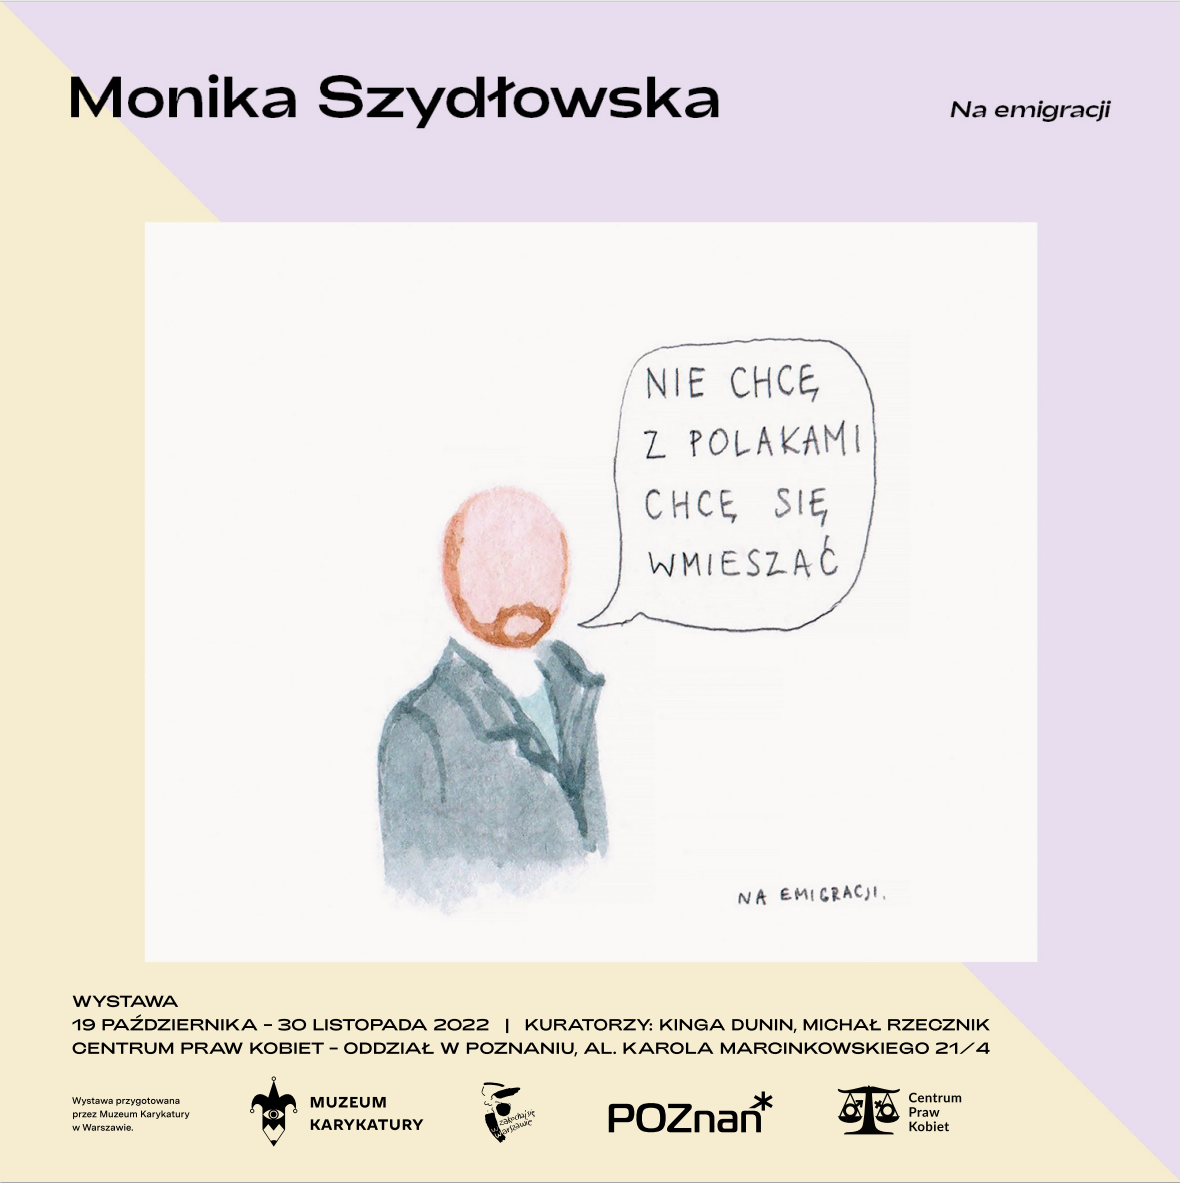 Monika Szydłowska